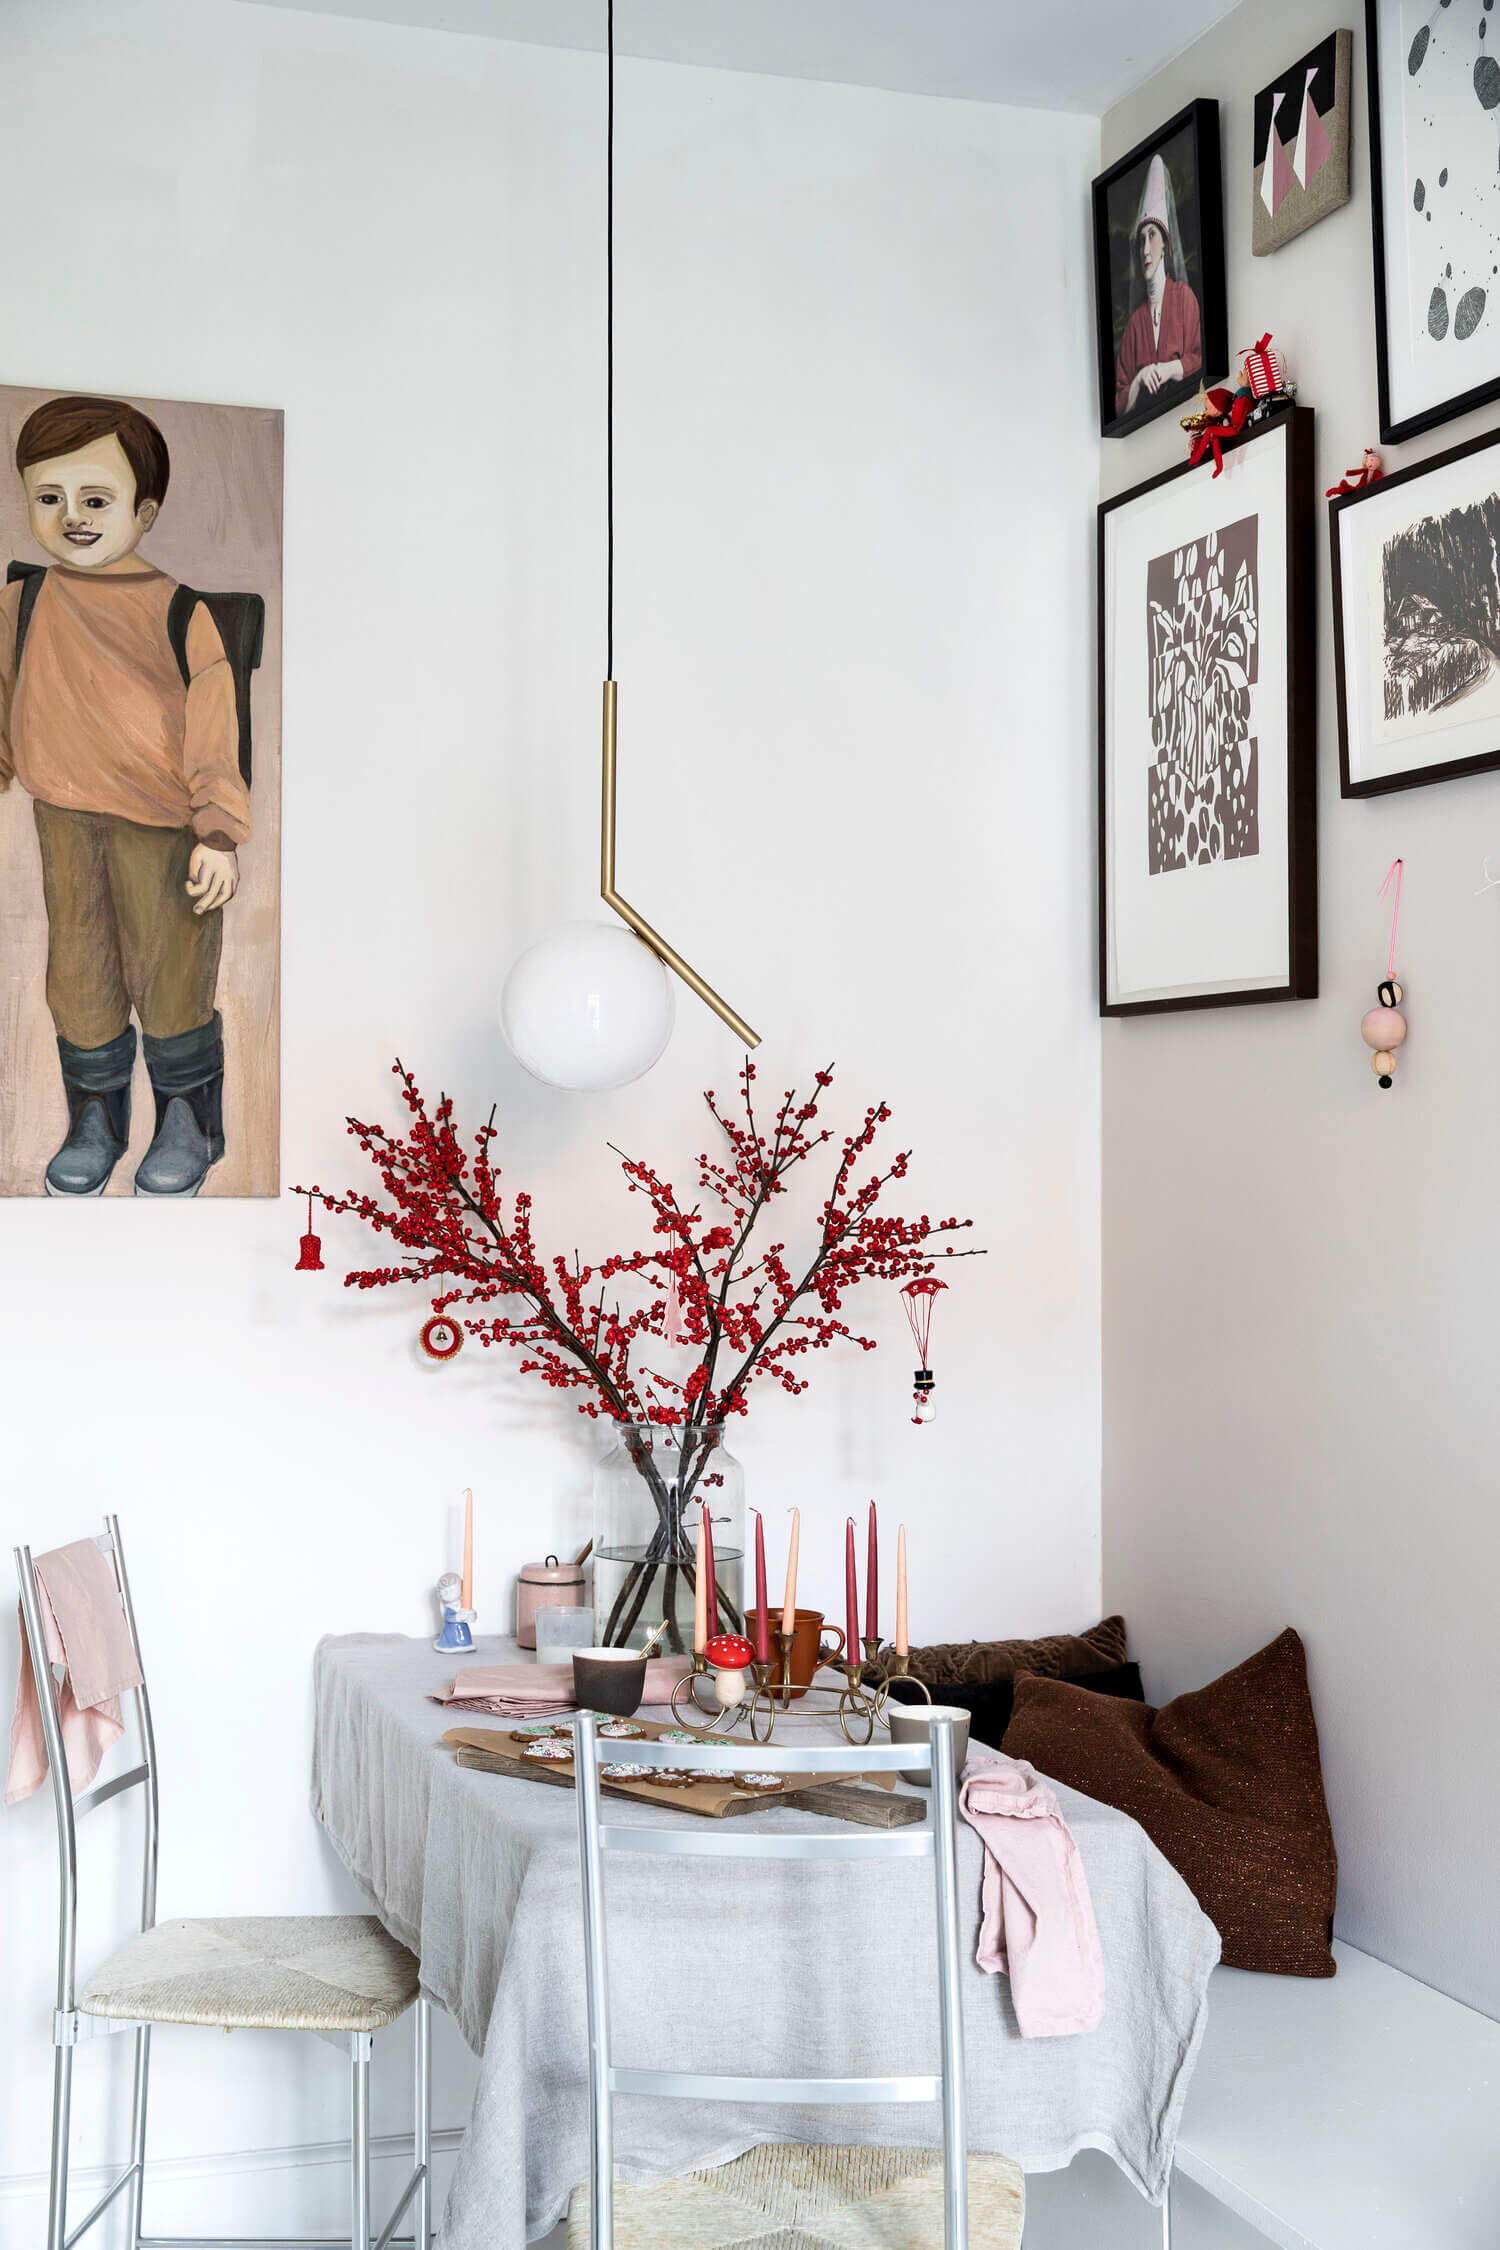 art filled danish home christmas decor nordroom9 An Art-Filled Danish Home Decorated For Christmas